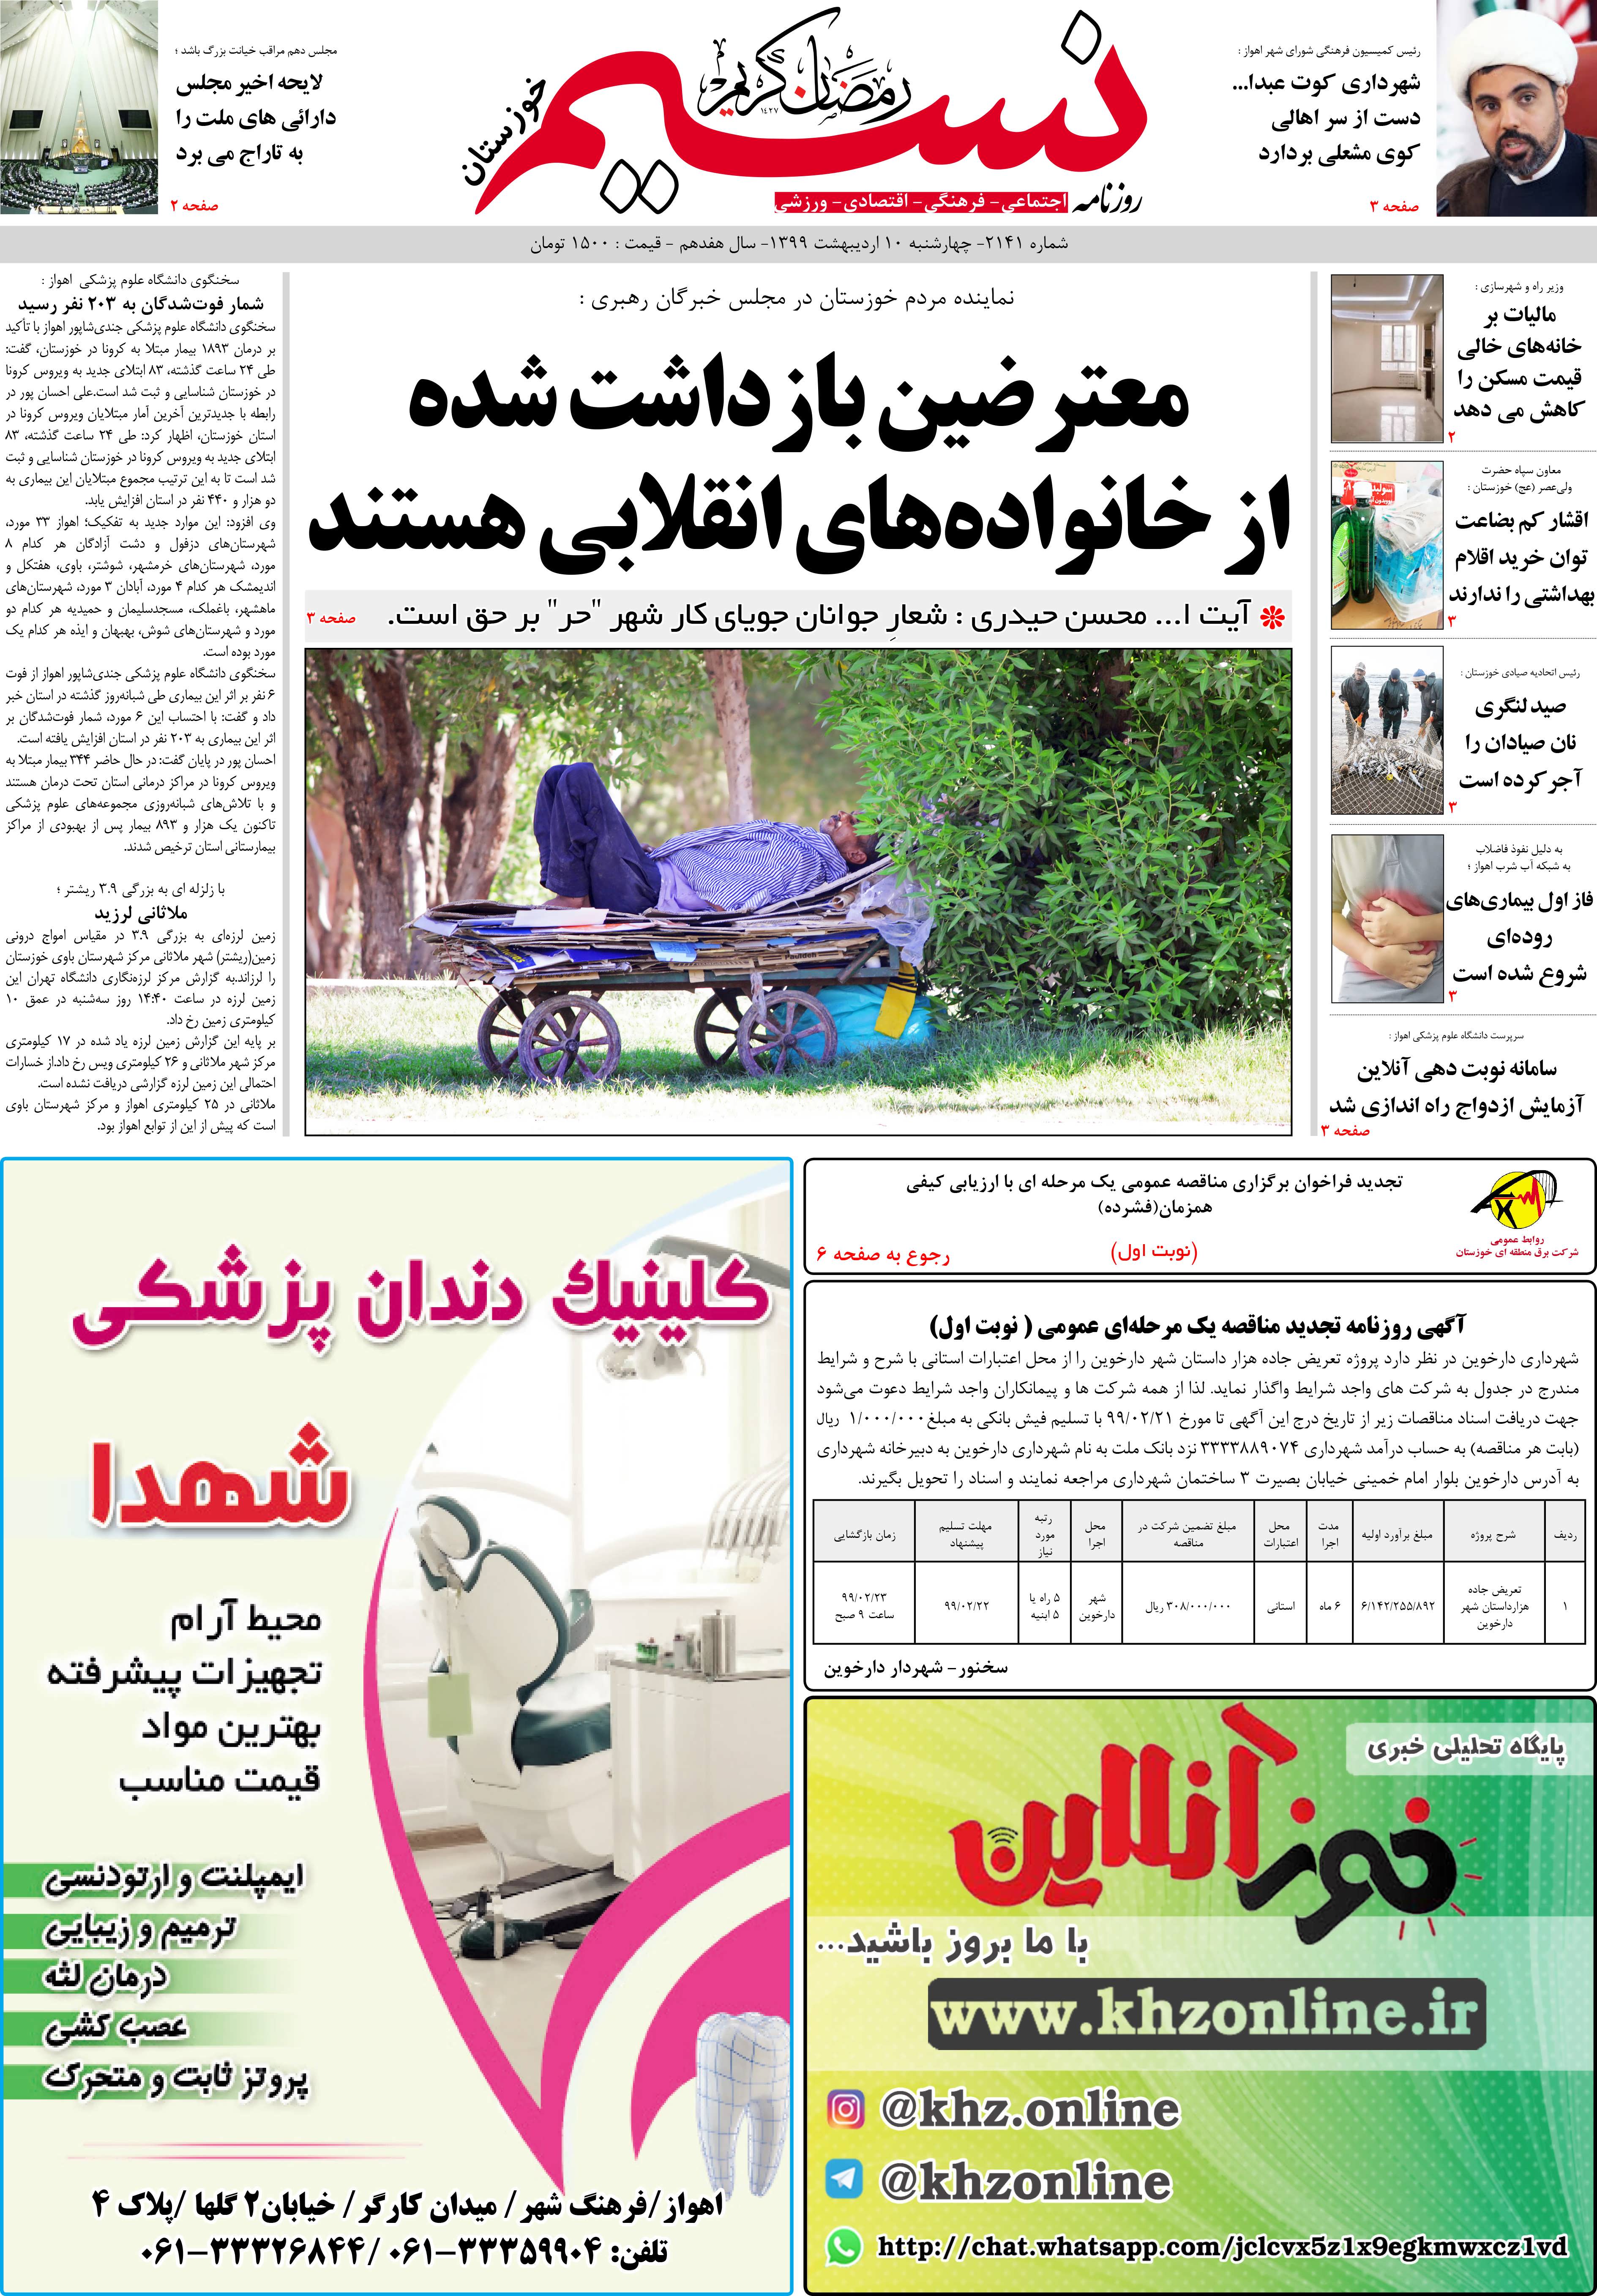 صفحه اصلی روزنامه نسیم شماره 2141 